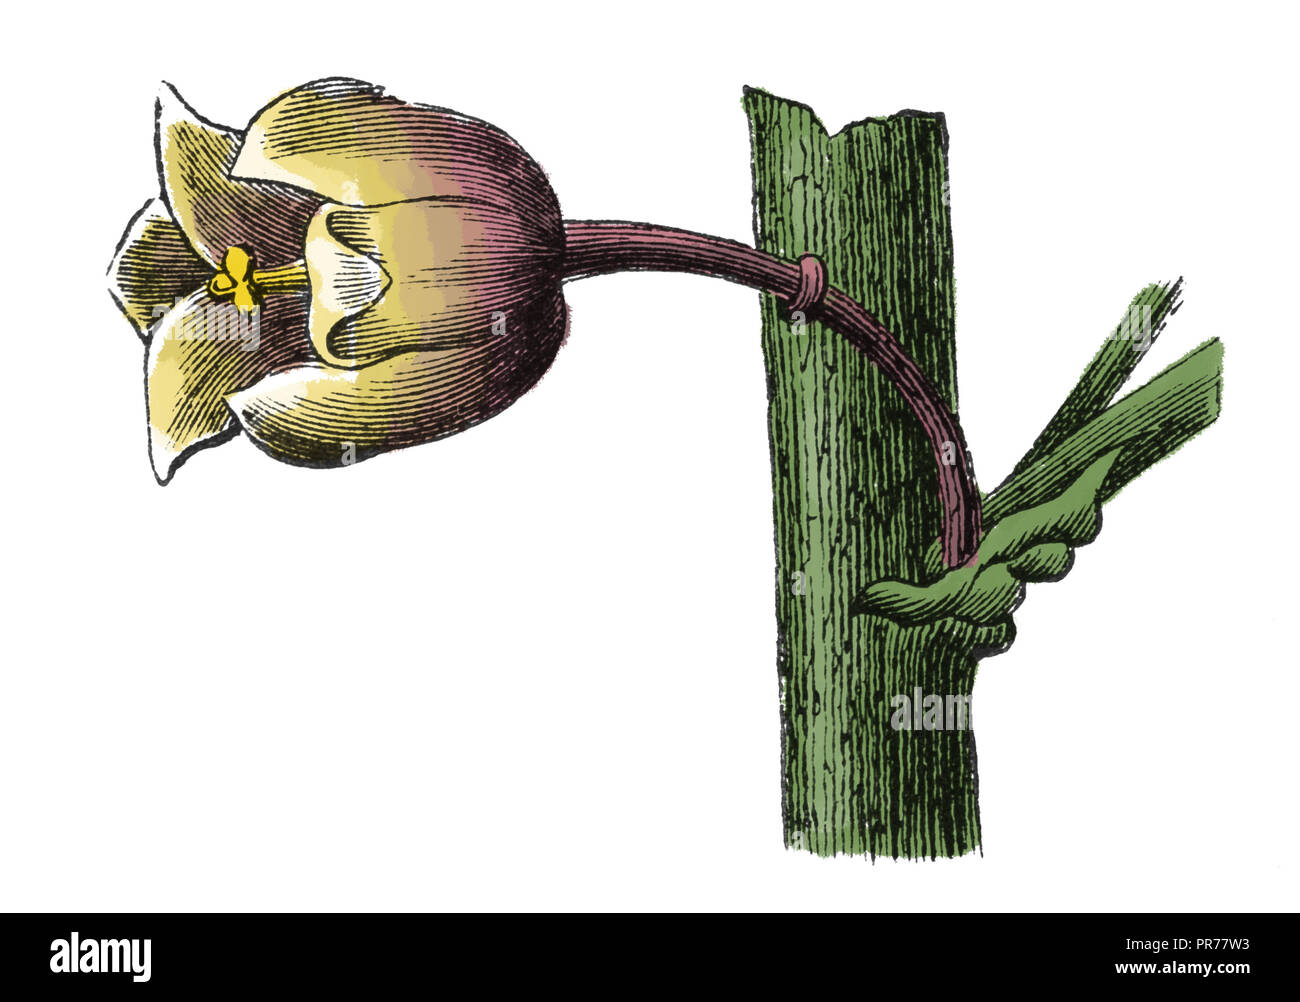 19 Abbildung: Asparagus officinalis Blüte. In systematischer Bilder-Atlas zum Conversations-Lexikon, ikonographische Encykl veröffentlicht. Stockfoto